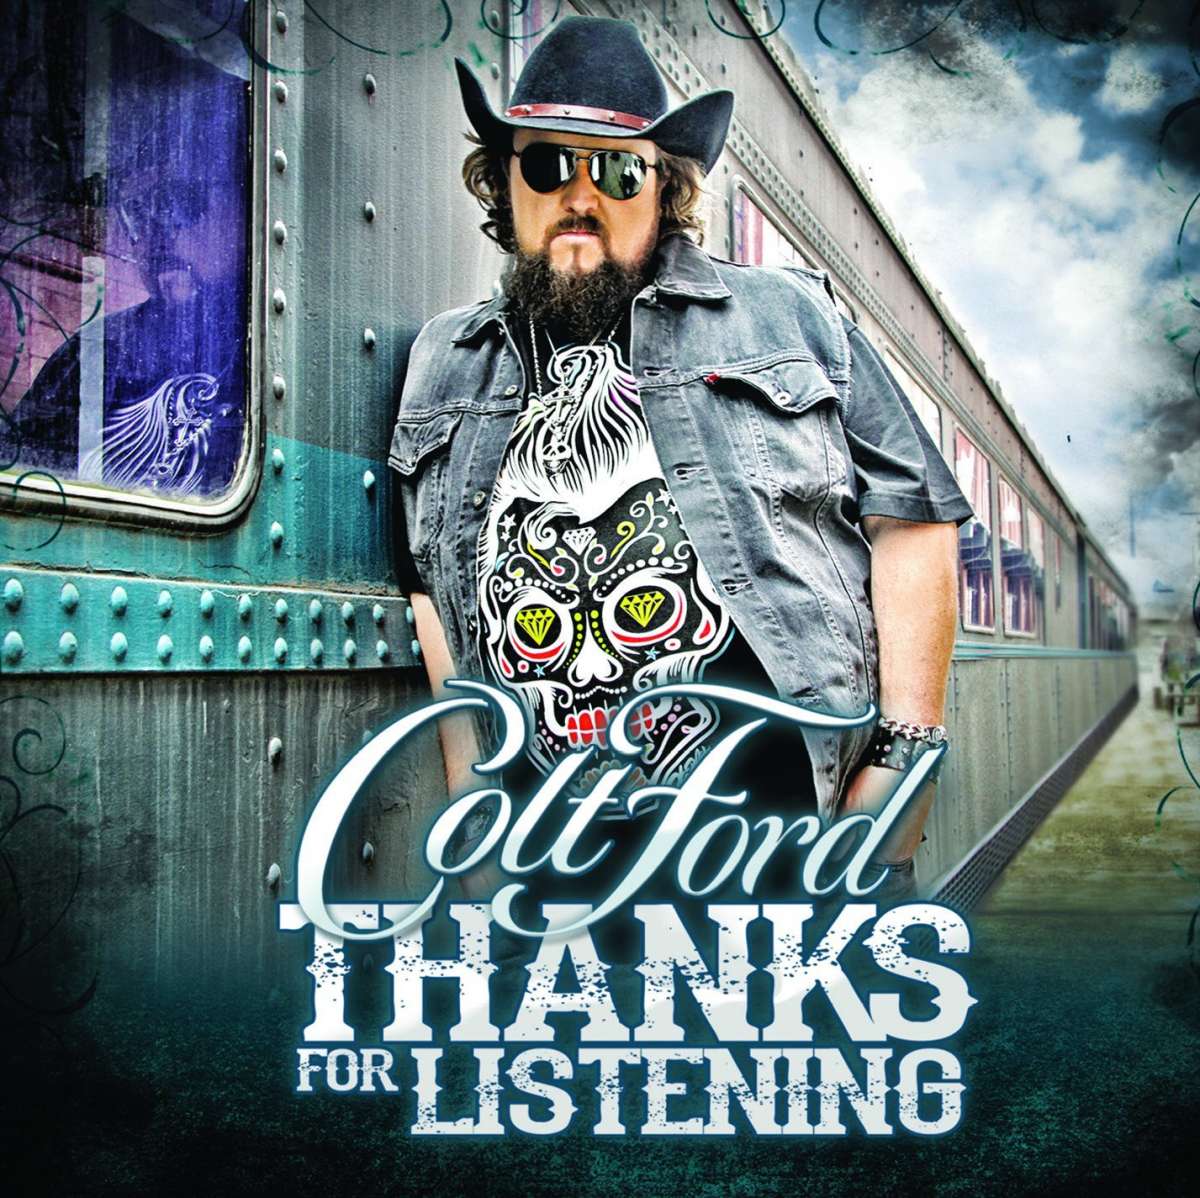 colt ford thanks for listening album artwork